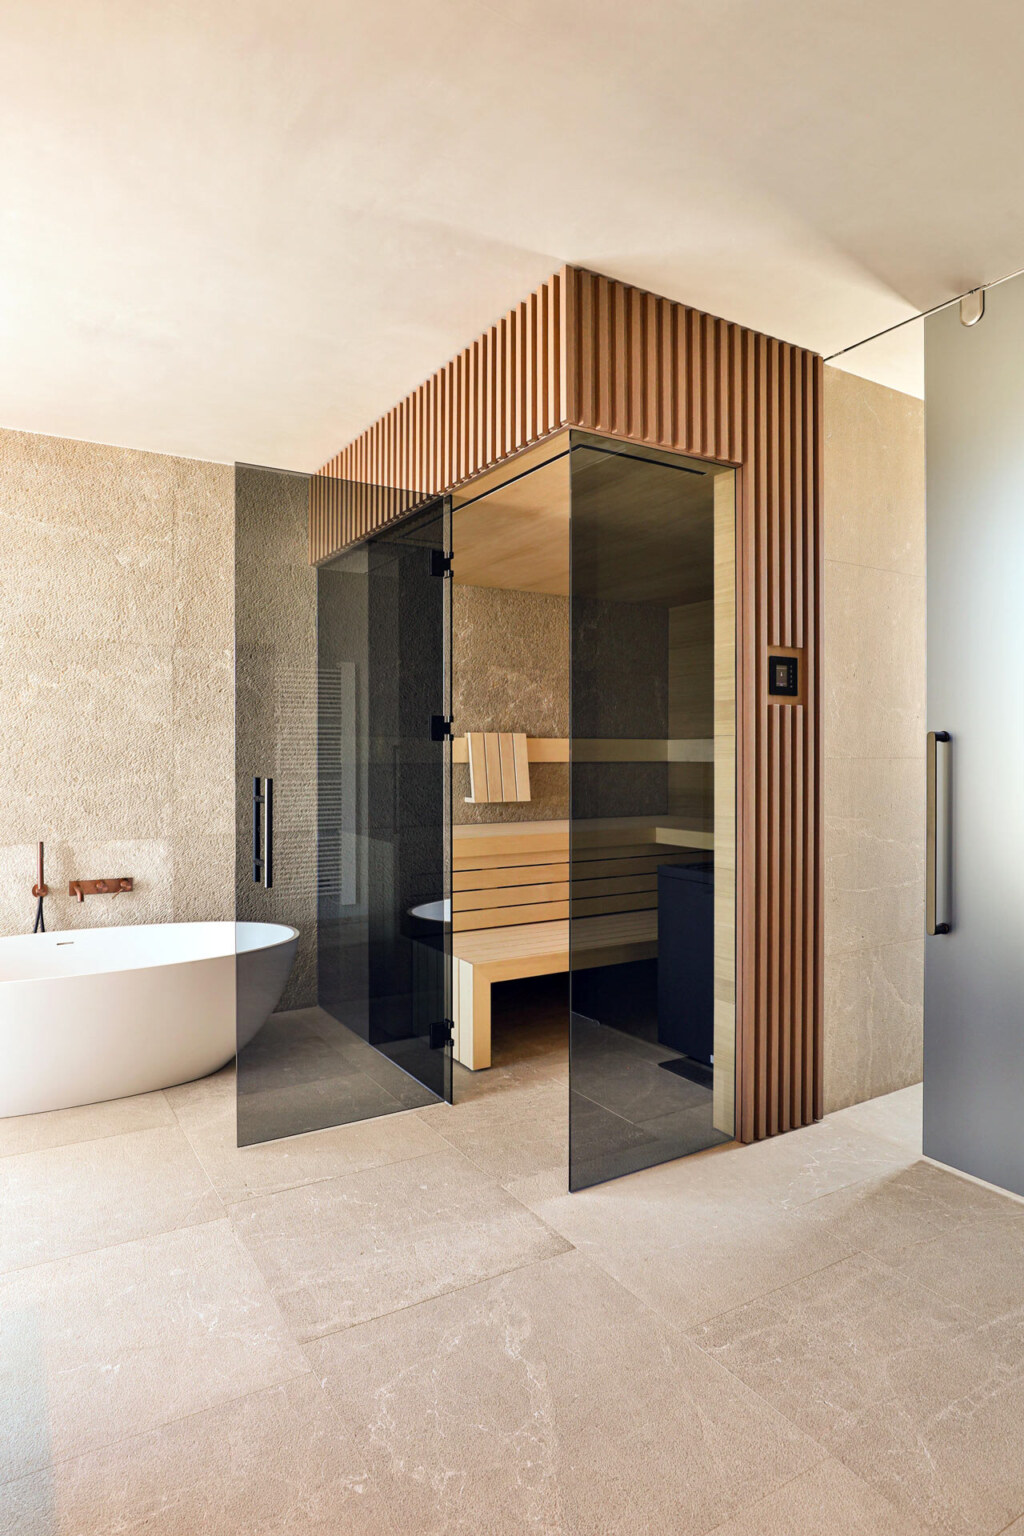 Minimalistische Sauna mit schwarz getönter Frontverglasung, verkleidet in getönten Holzleisten, innen ausgeführt in gemaserten, astfreien Eichenholzpaneelen in einem Badezimmer mit freistehender Badewanne im Japandi Stil.